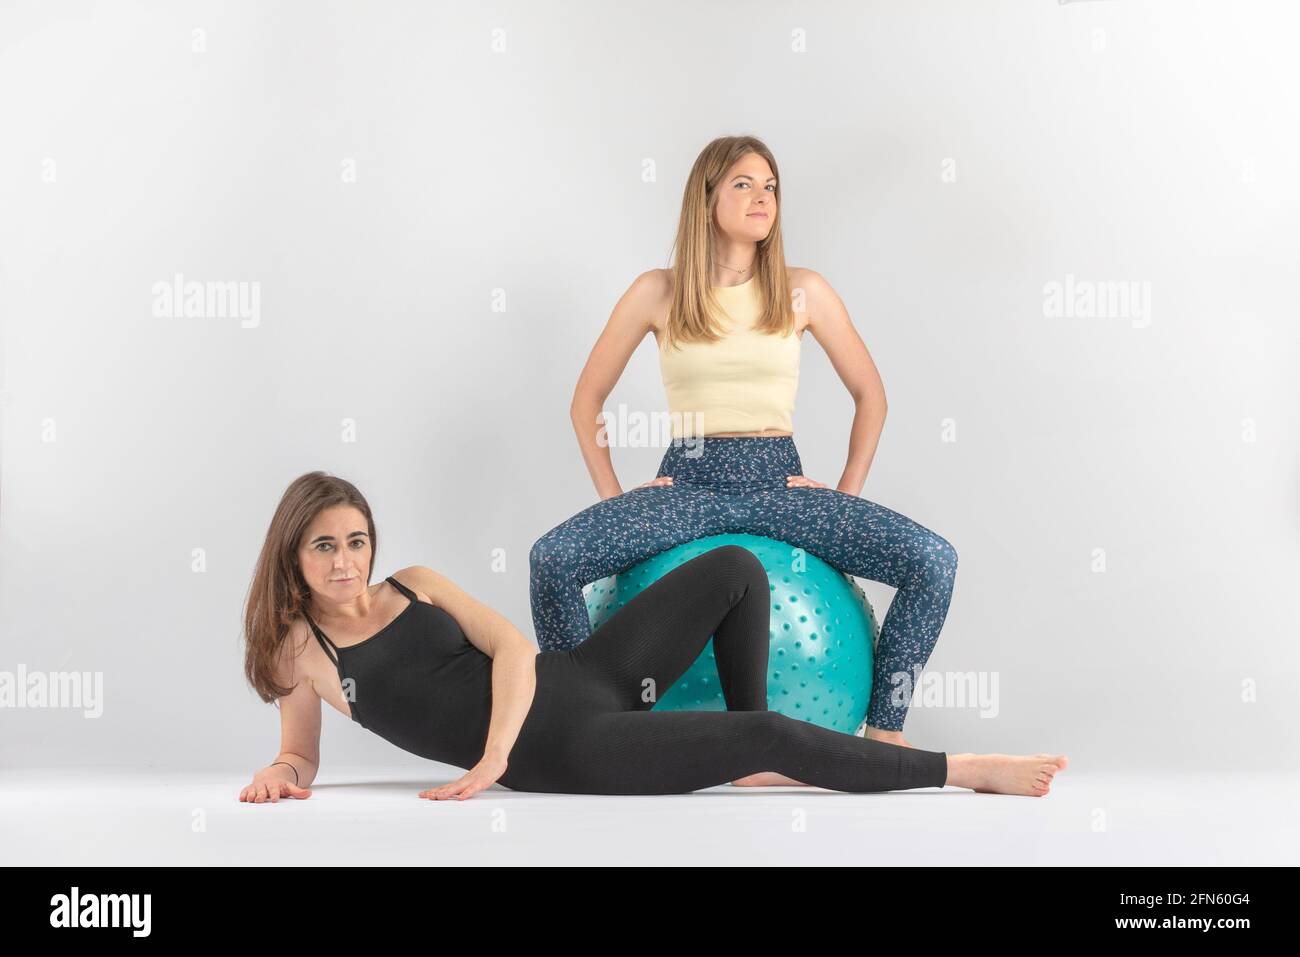 deux jeunes filles avec pilates ball Banque D'Images